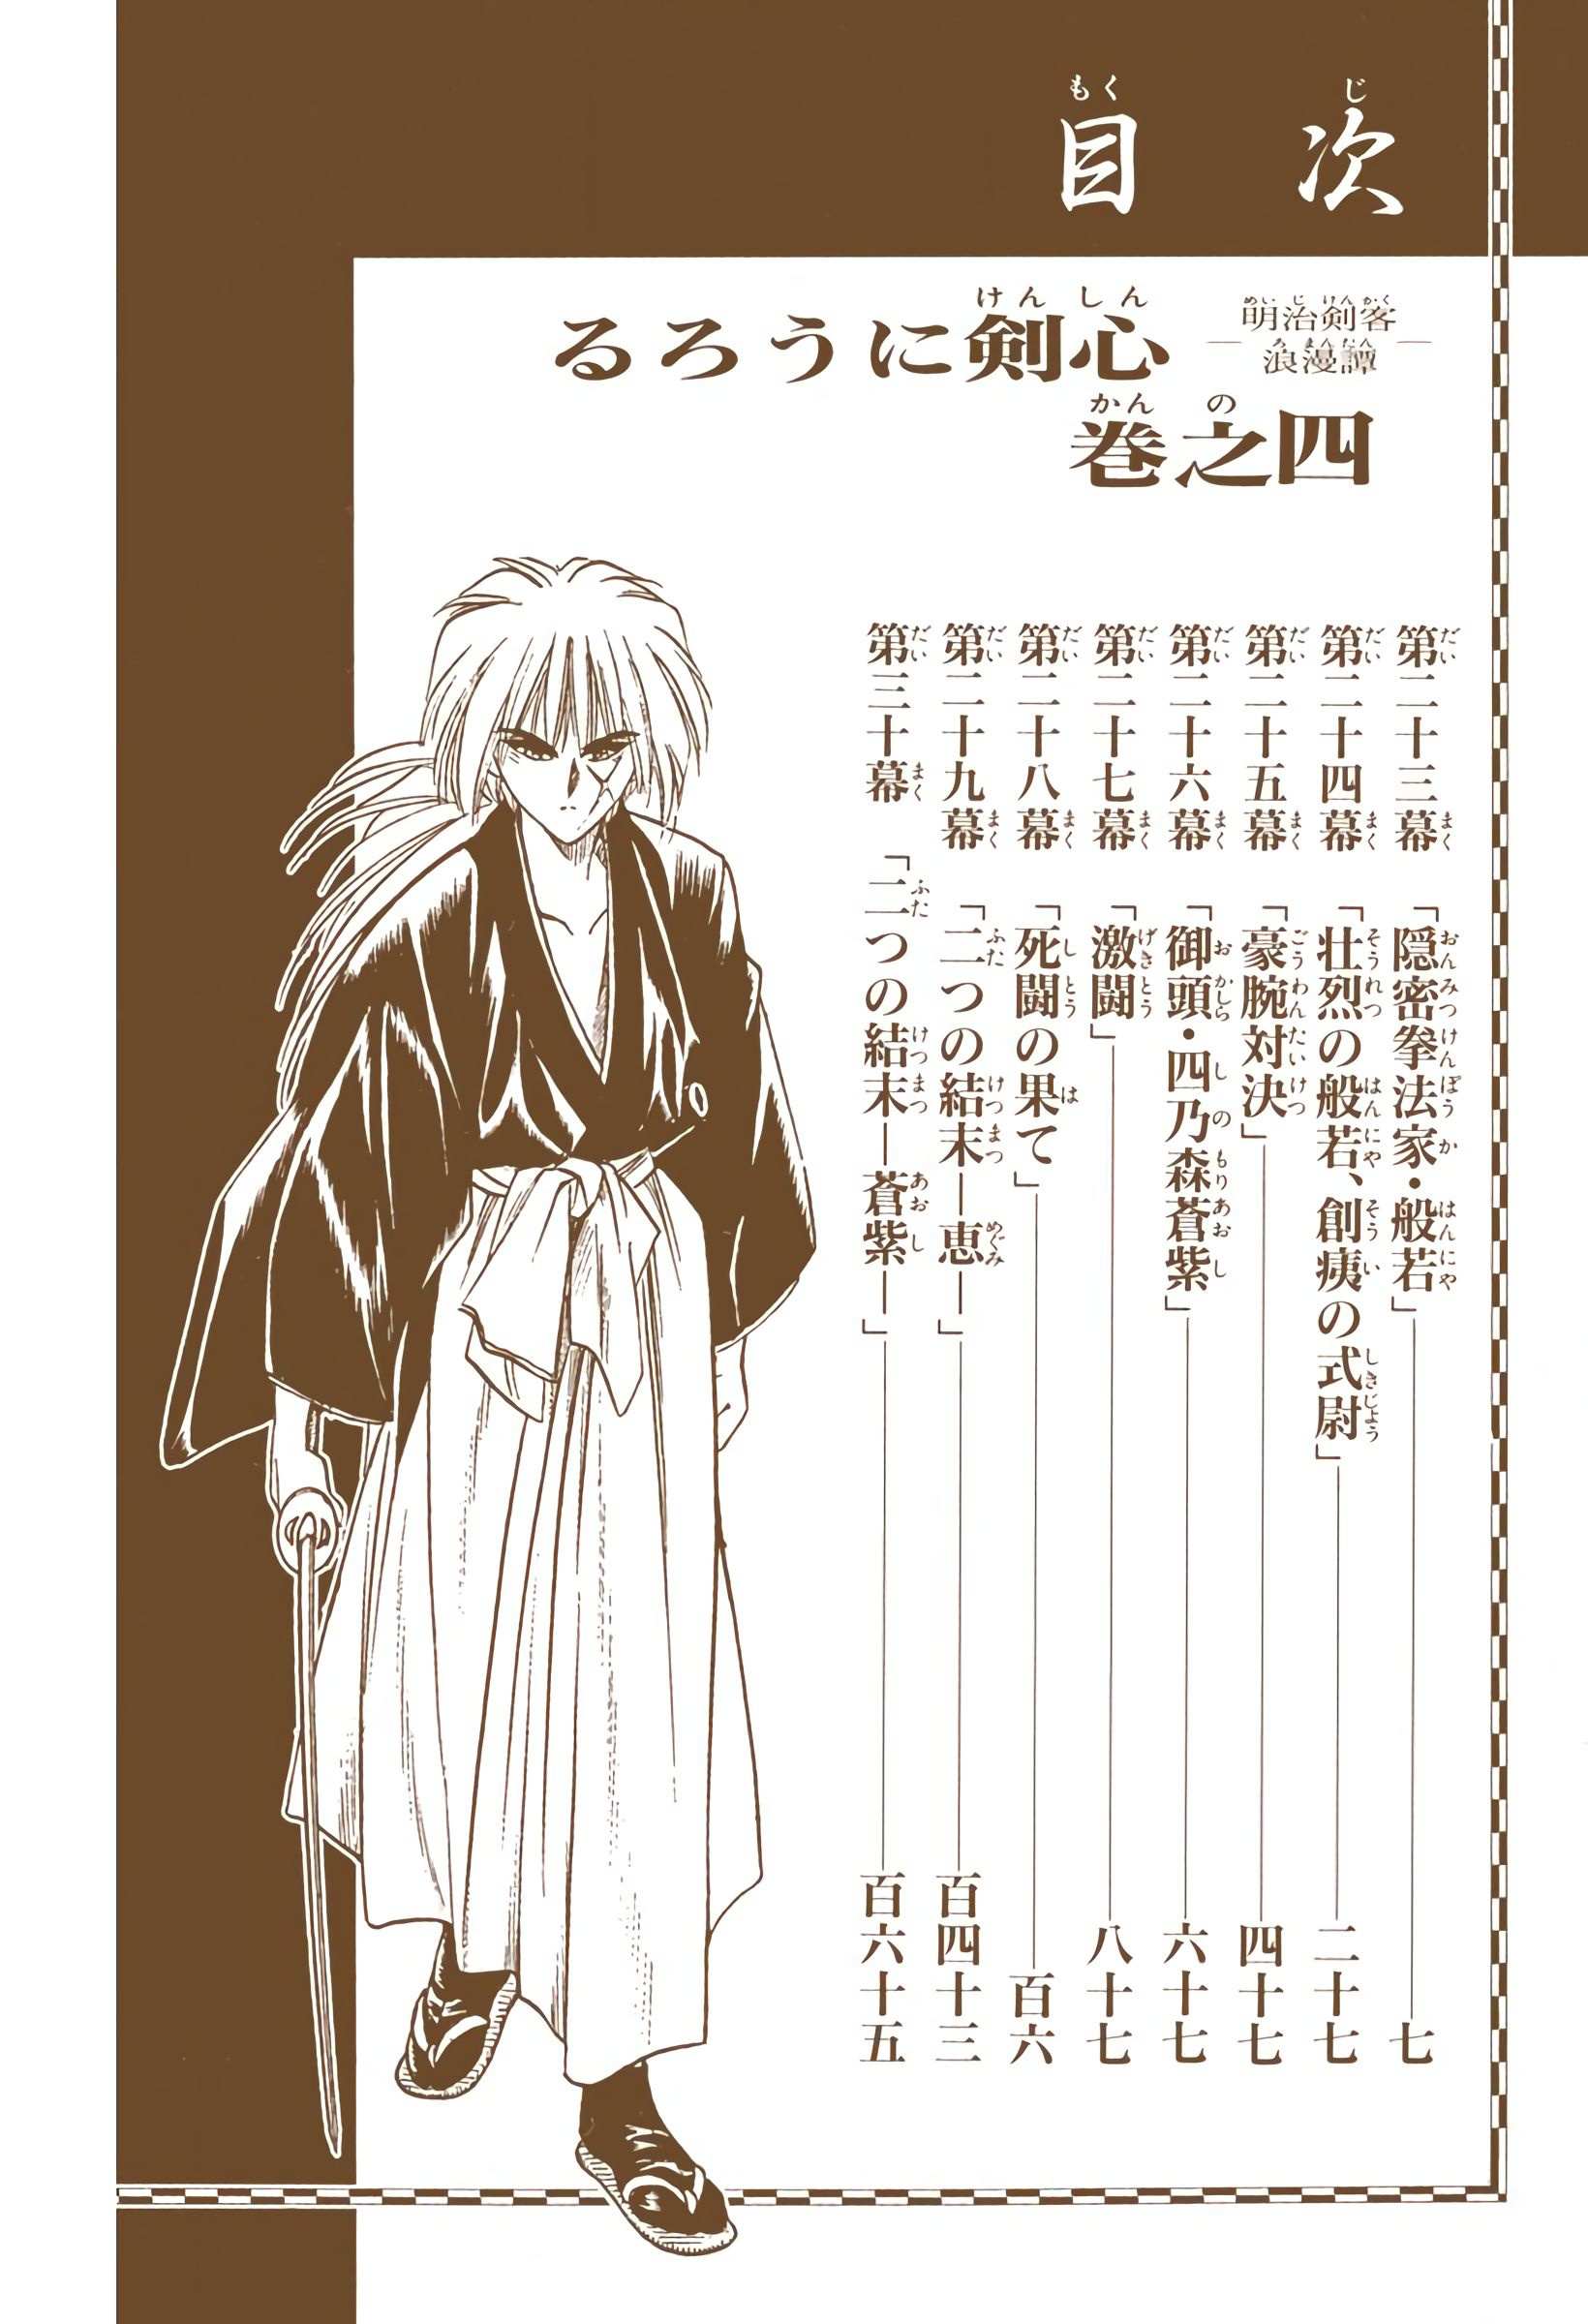 Rurouni Kenshin: Meiji Kenkaku Romantan - Digital Colored - chapter 23 - #6